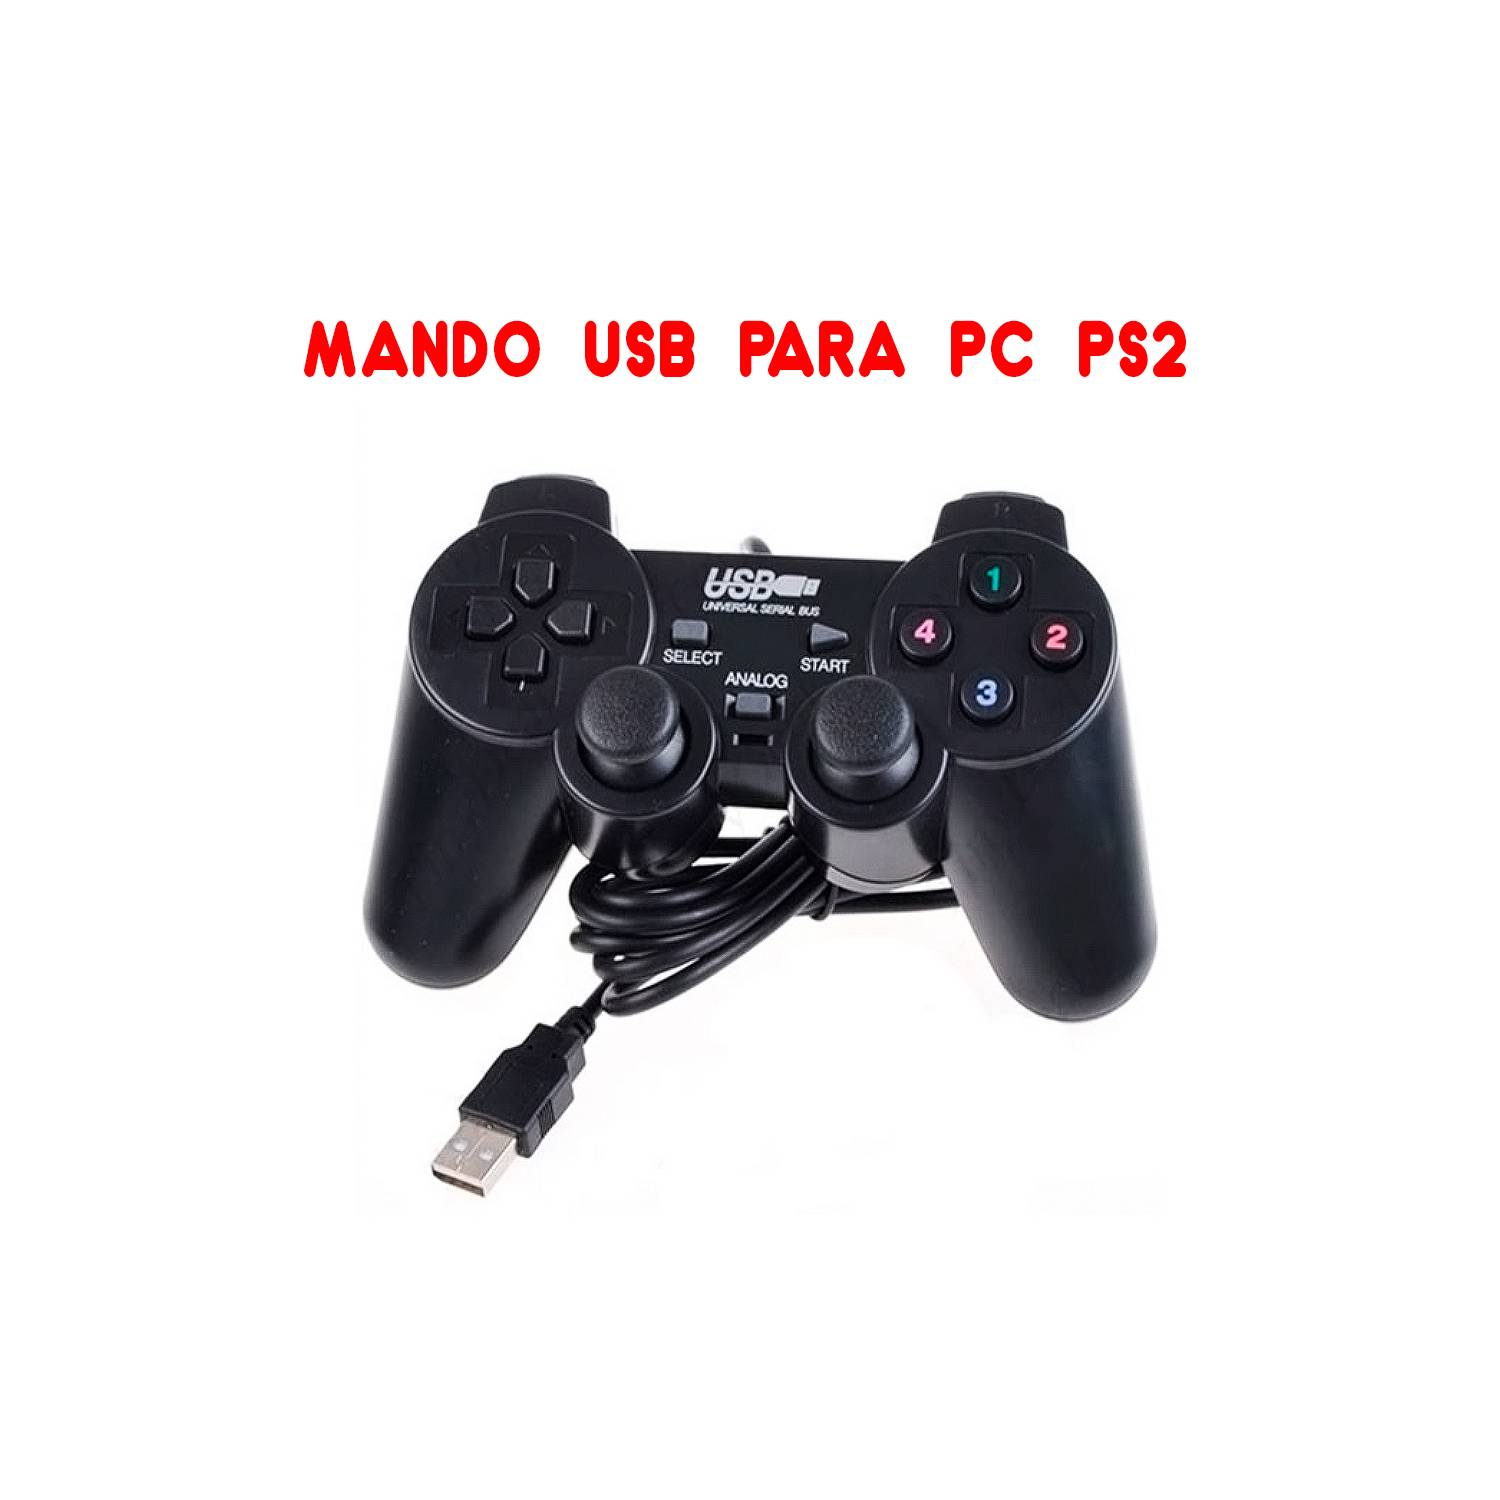 Ripley - MANDO USB PARA PC Y LAPTOP MODELO PLAY 2 - CONTROL COLOR NEGRO